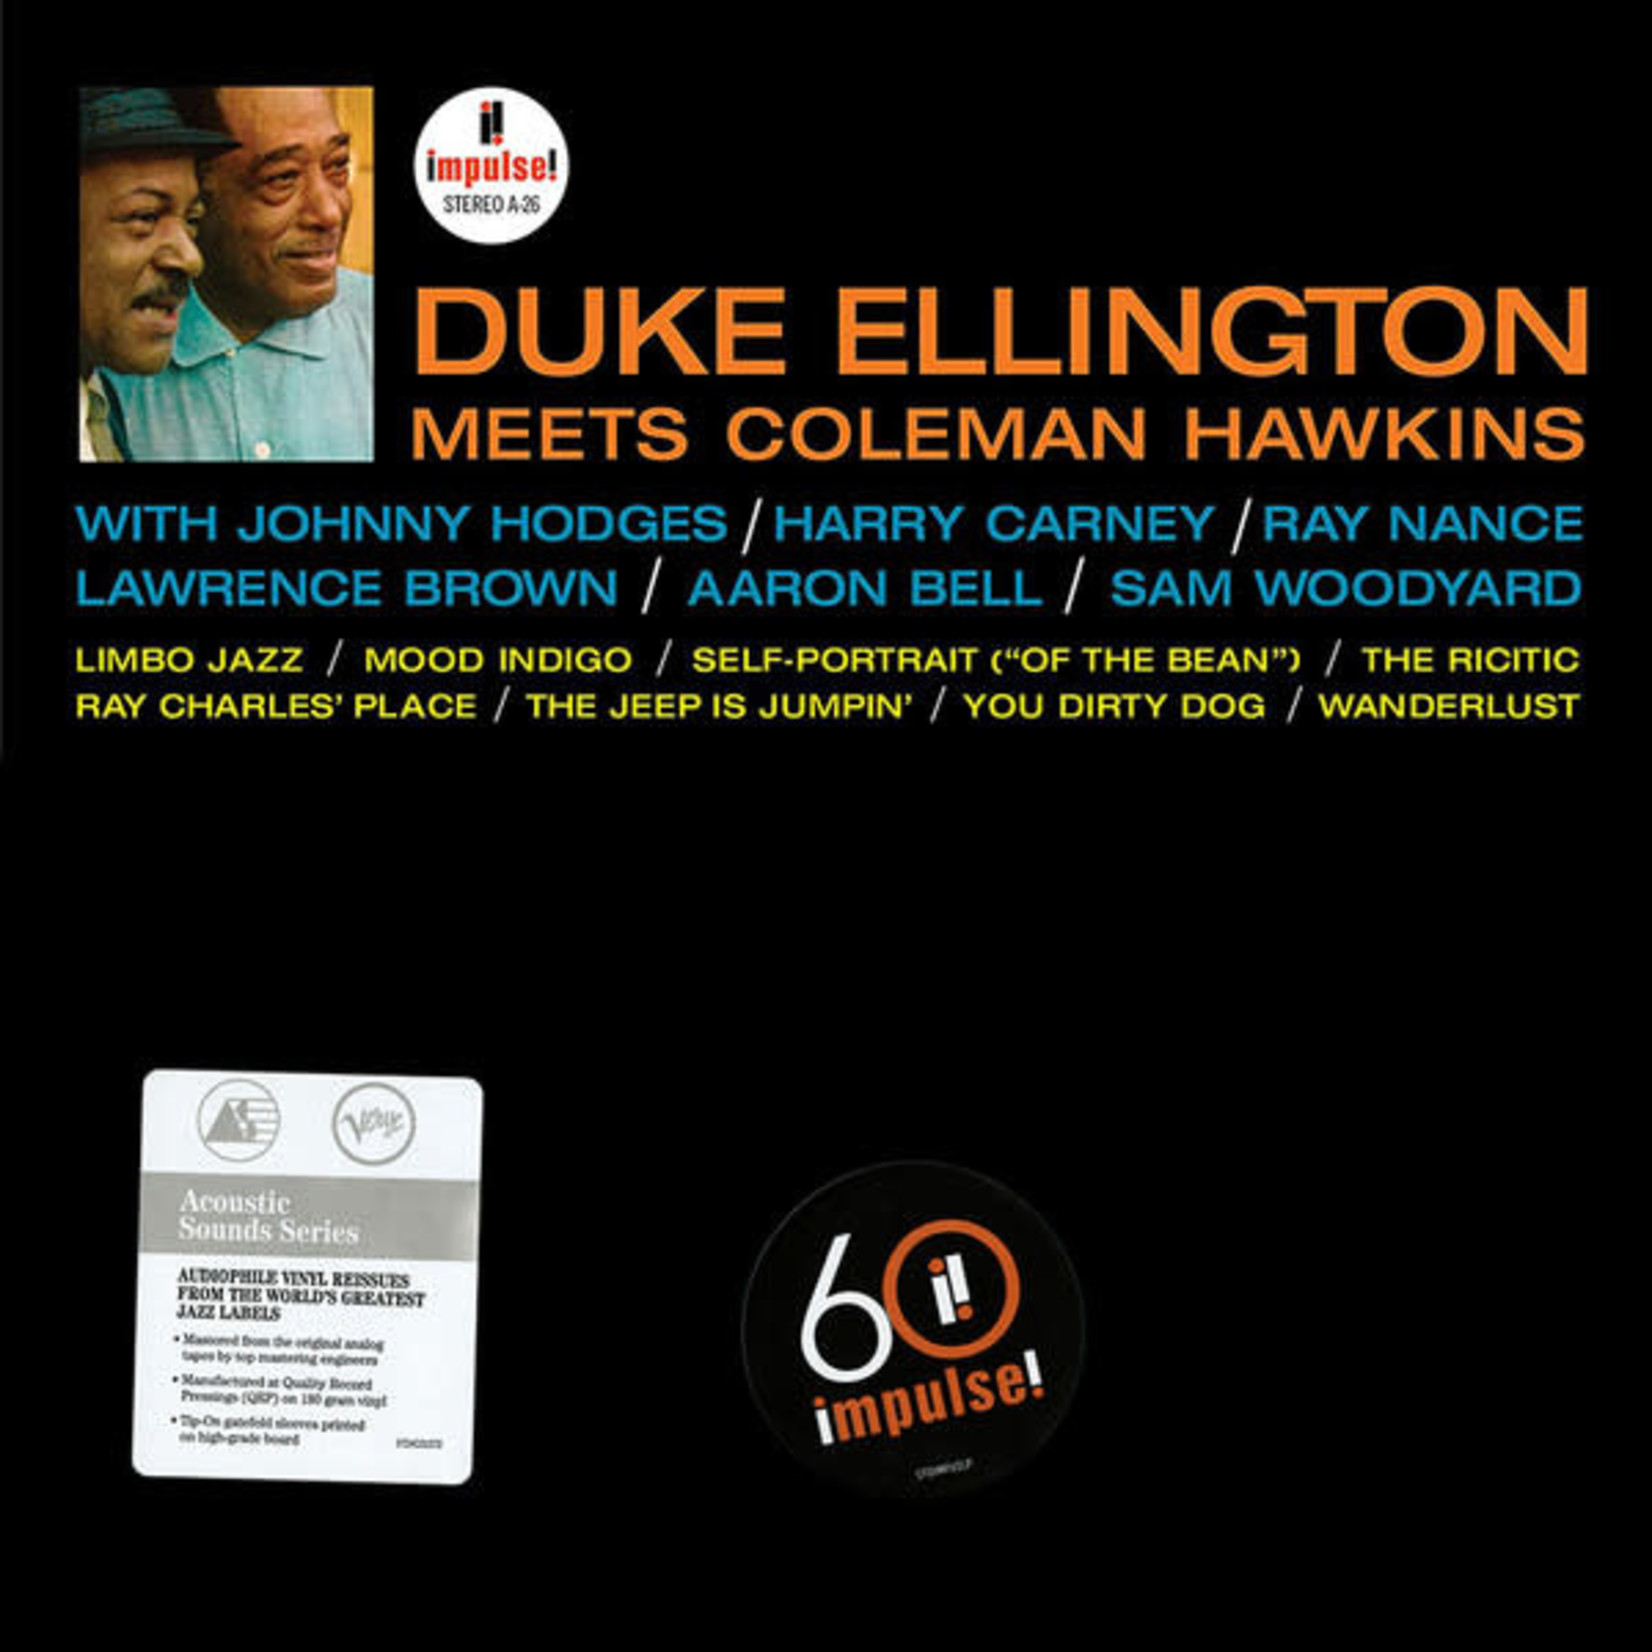 [New] Duke Ellington - Duke Ellington Meets Coleman Hawkins (Verve Acoustic Sounds Series)